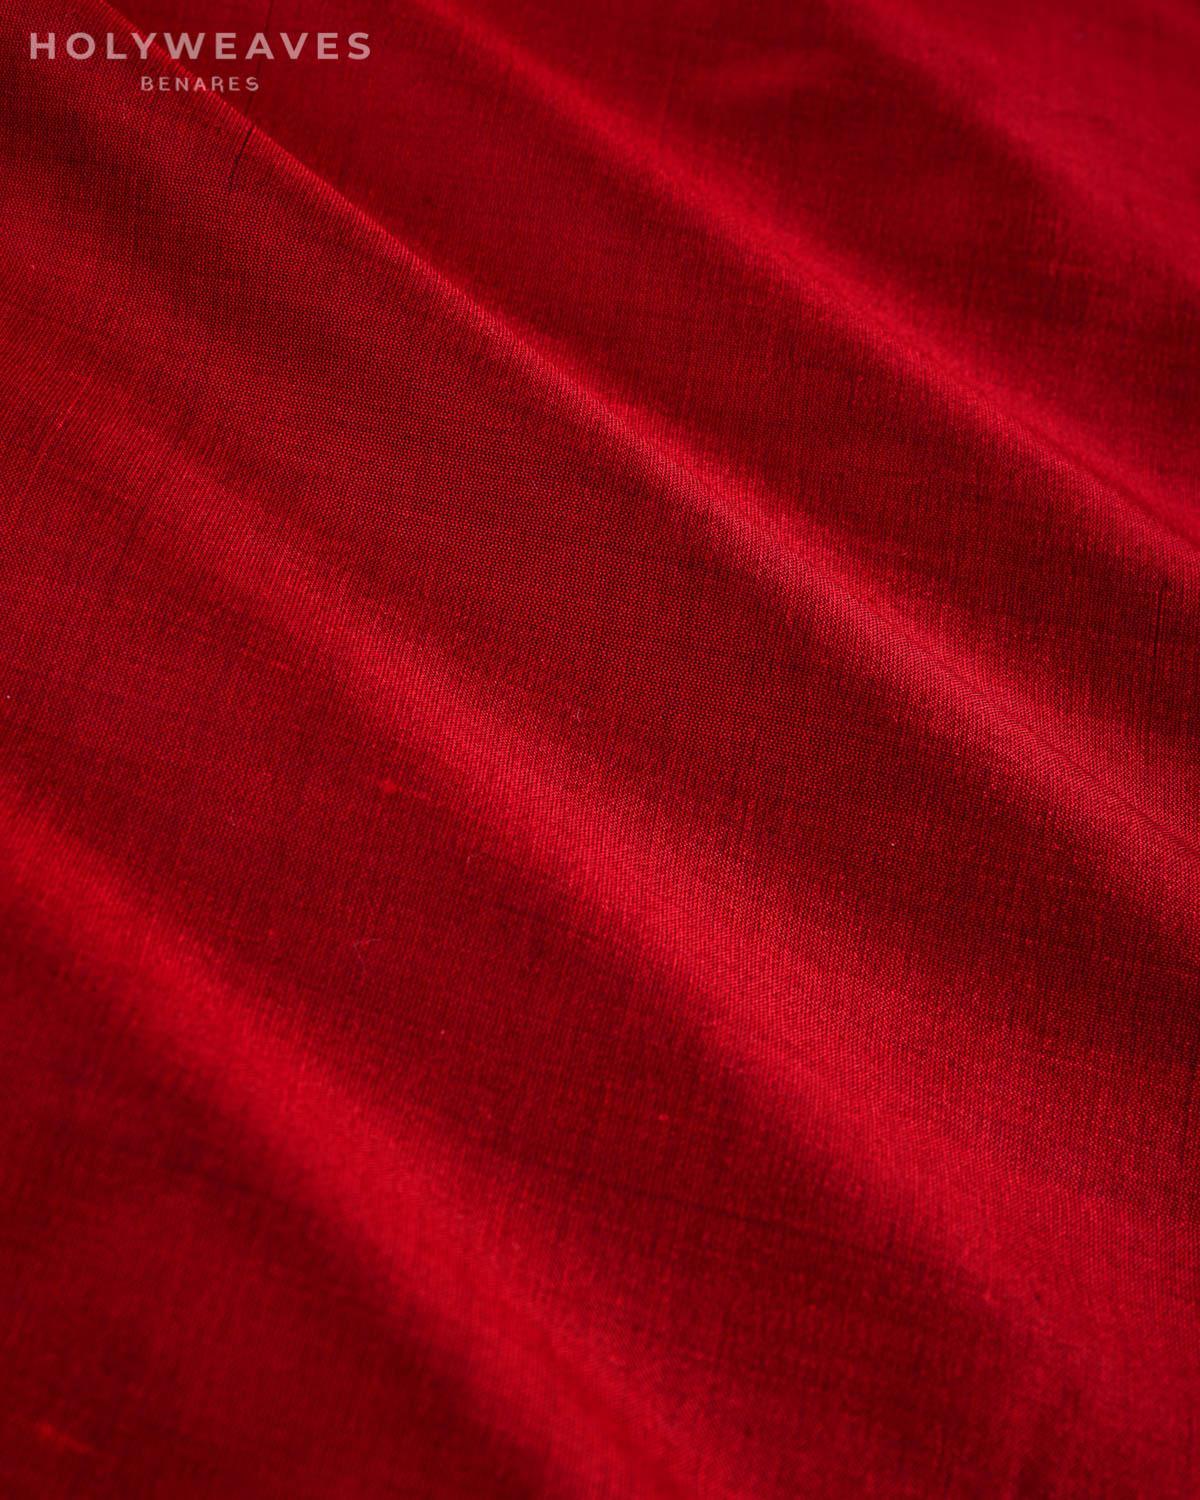 Maroon Banarasi Plain Woven Spun Silk Fabric - By HolyWeaves, Benares